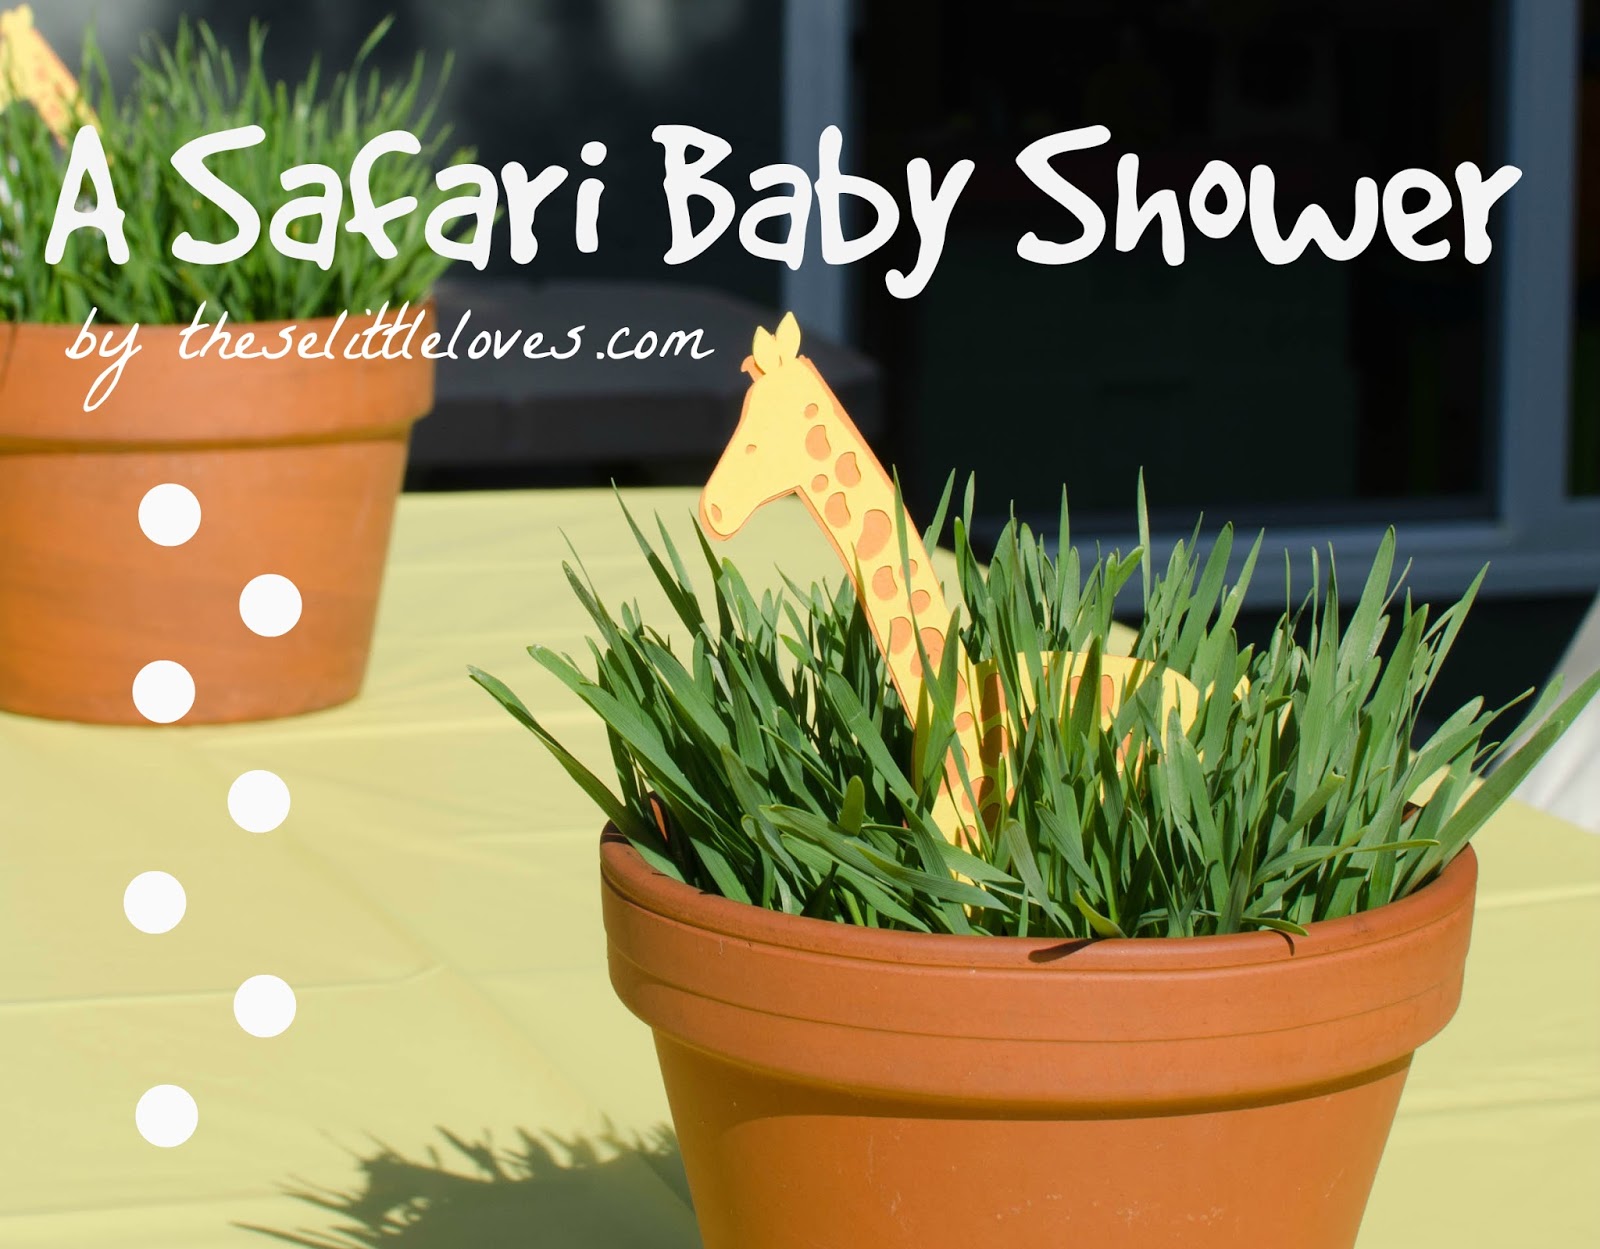 A Safari Baby Shower